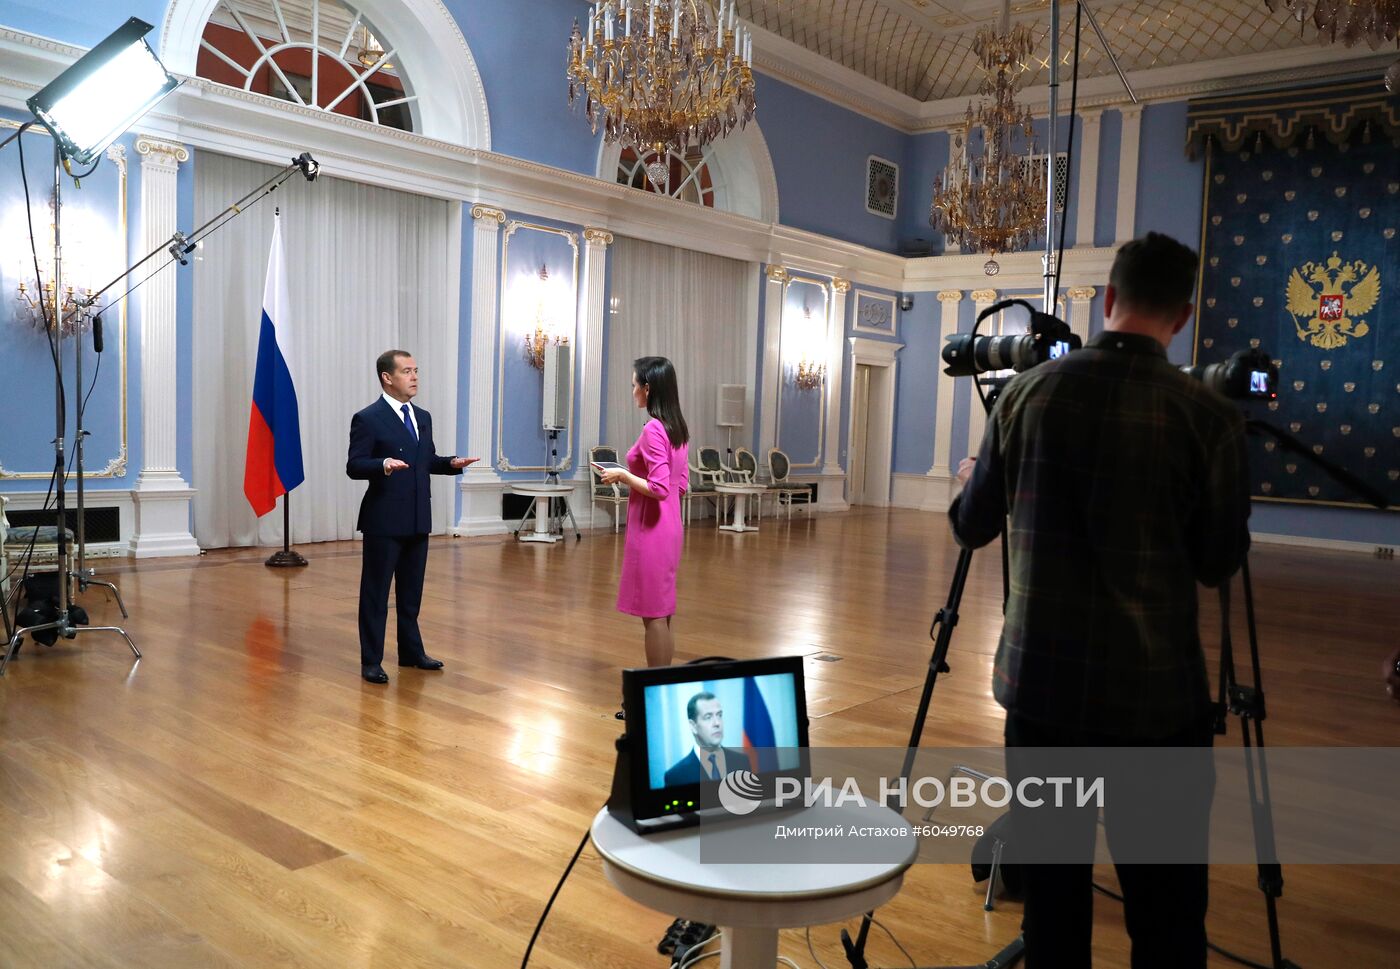 Интервью премьер-министра РФ Д. Медведева телеканалу "Россия 24"